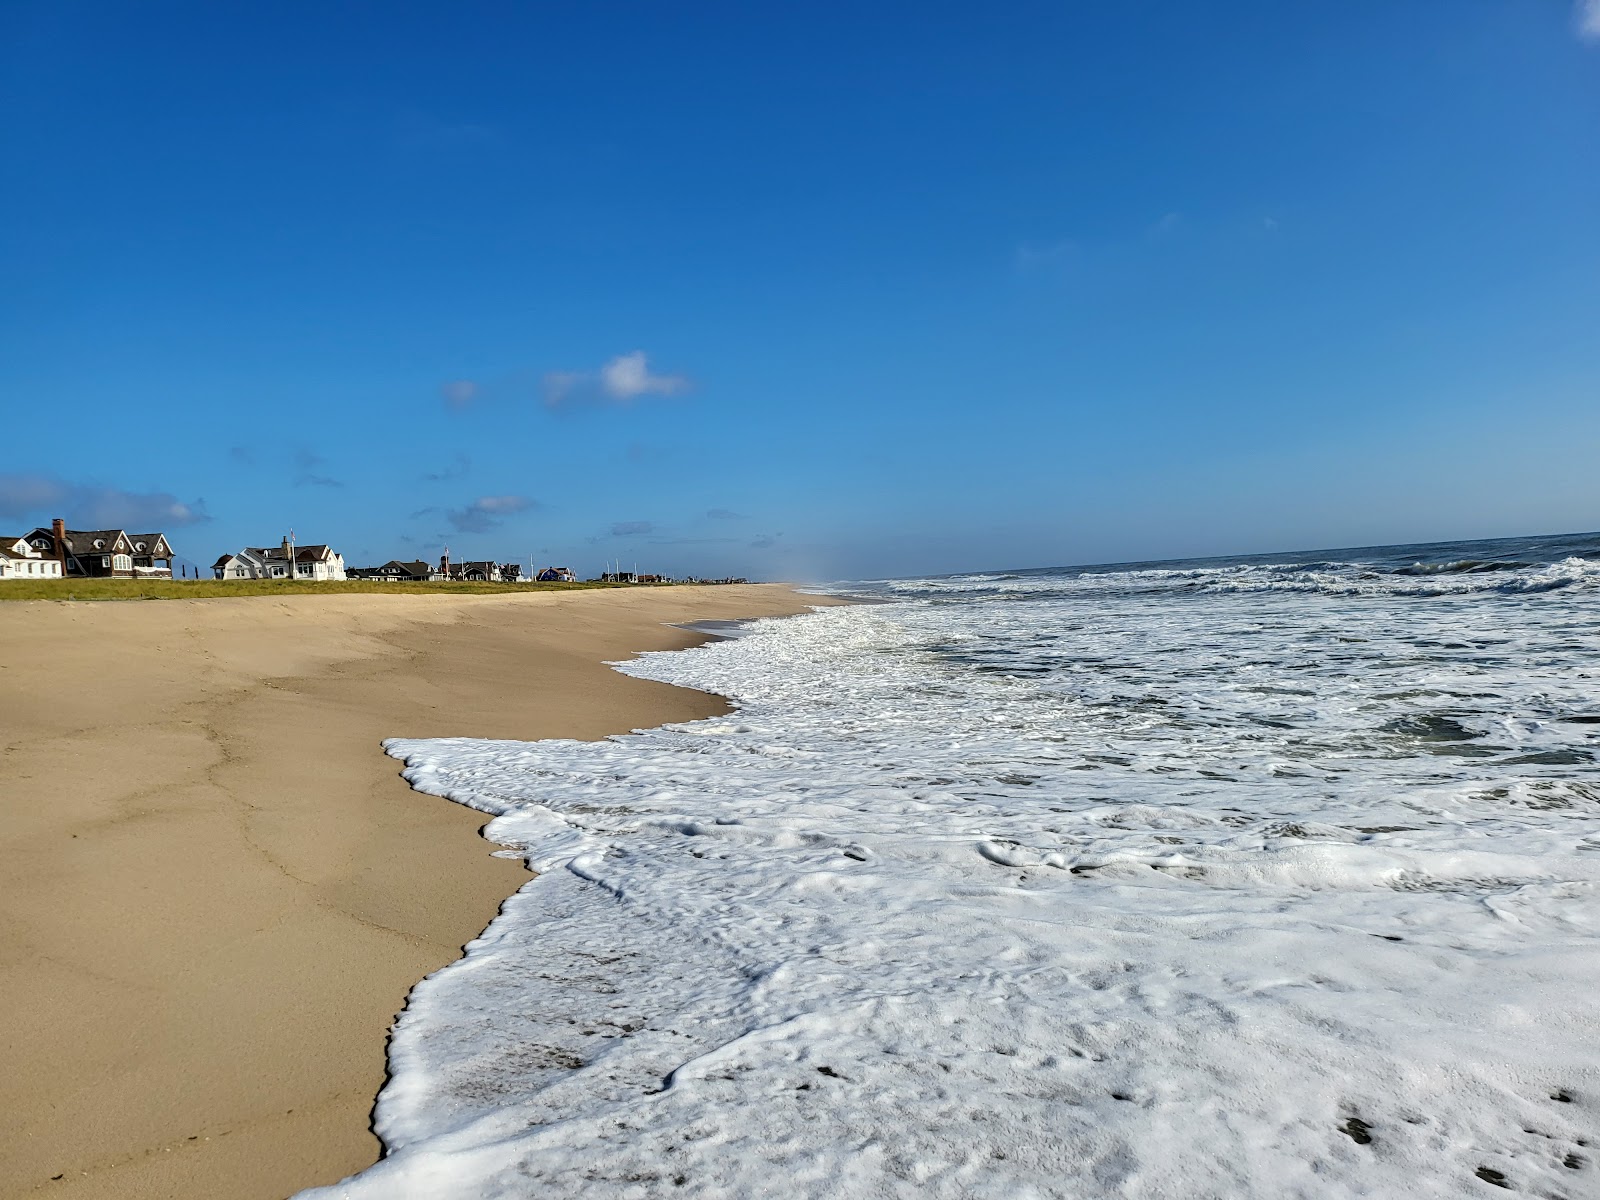 Fotografie cu Lyman Str. Beach cu o suprafață de nisip strălucitor